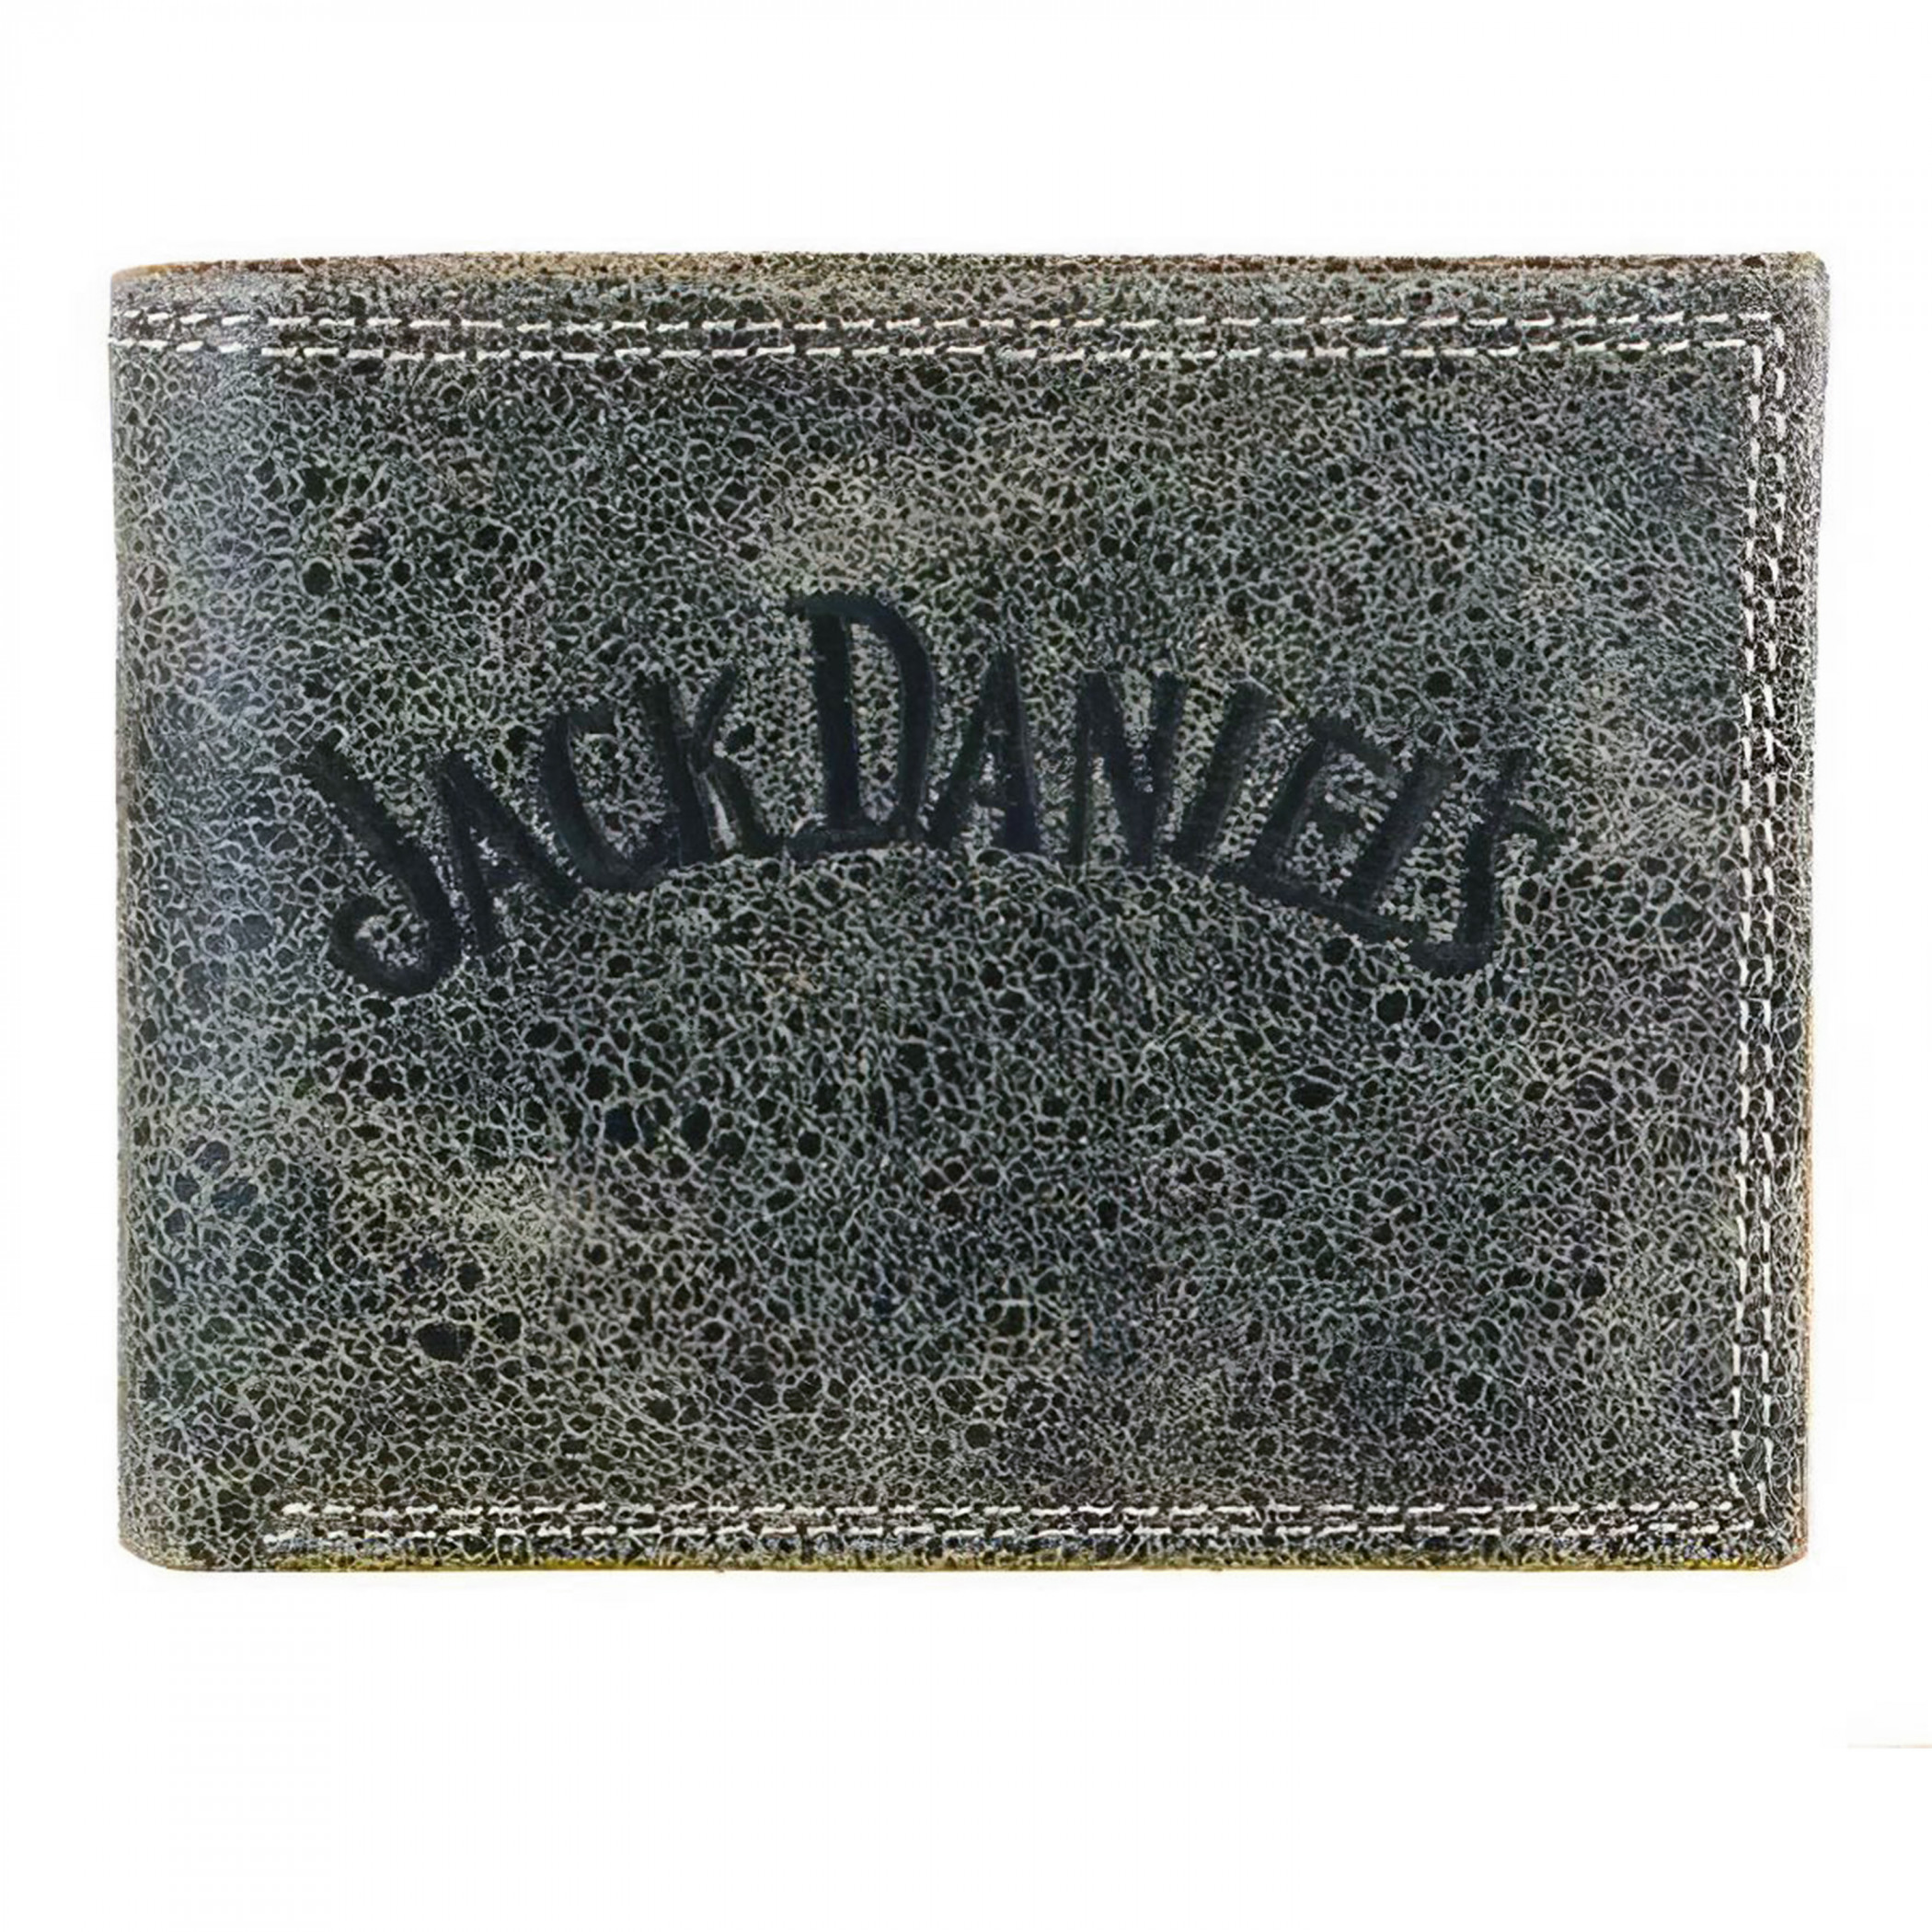 Jack Daniel's Charcoal Leather Billfold Wallet